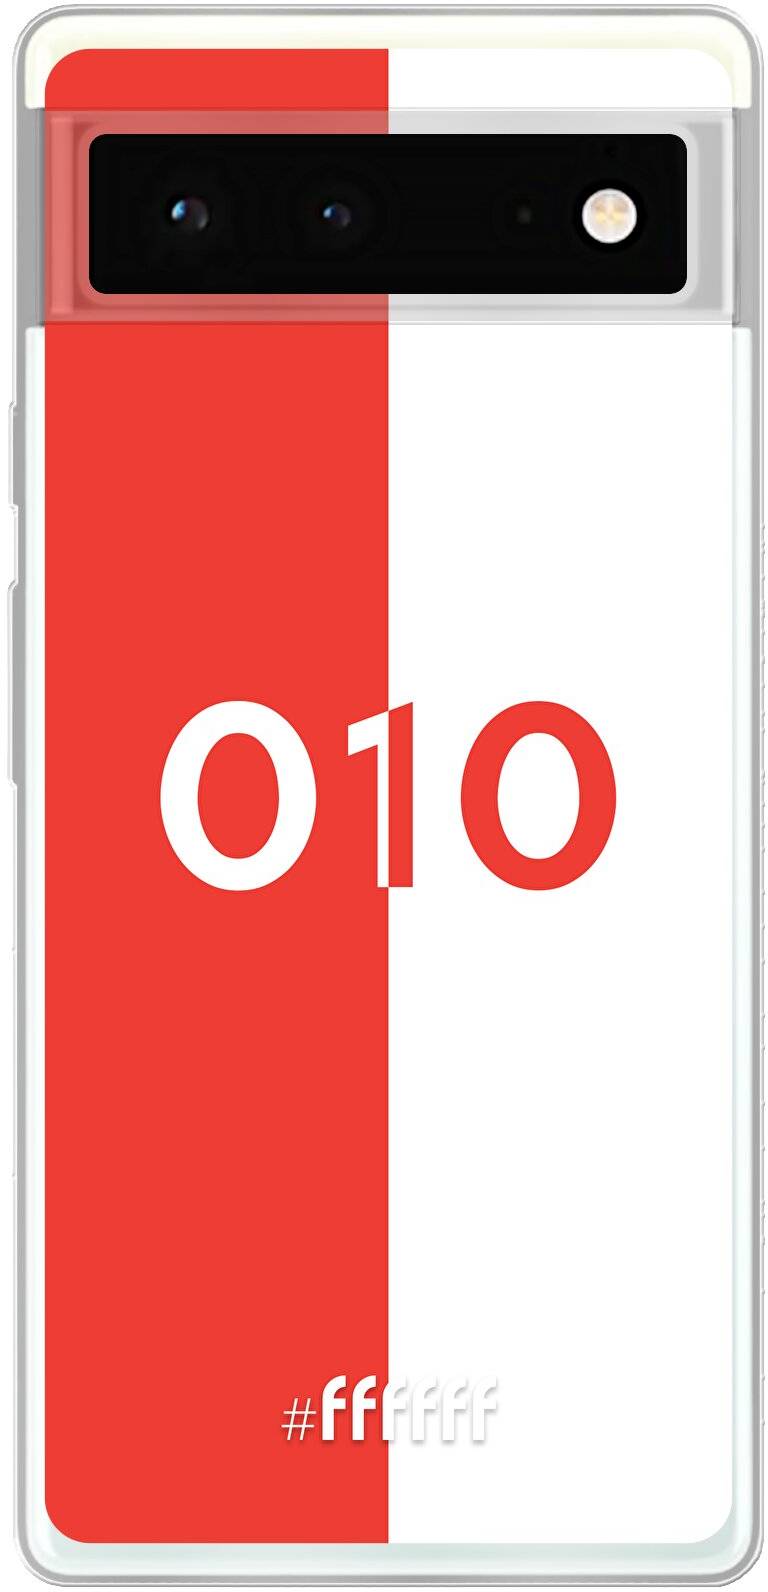 Feyenoord - 010 Pixel 6